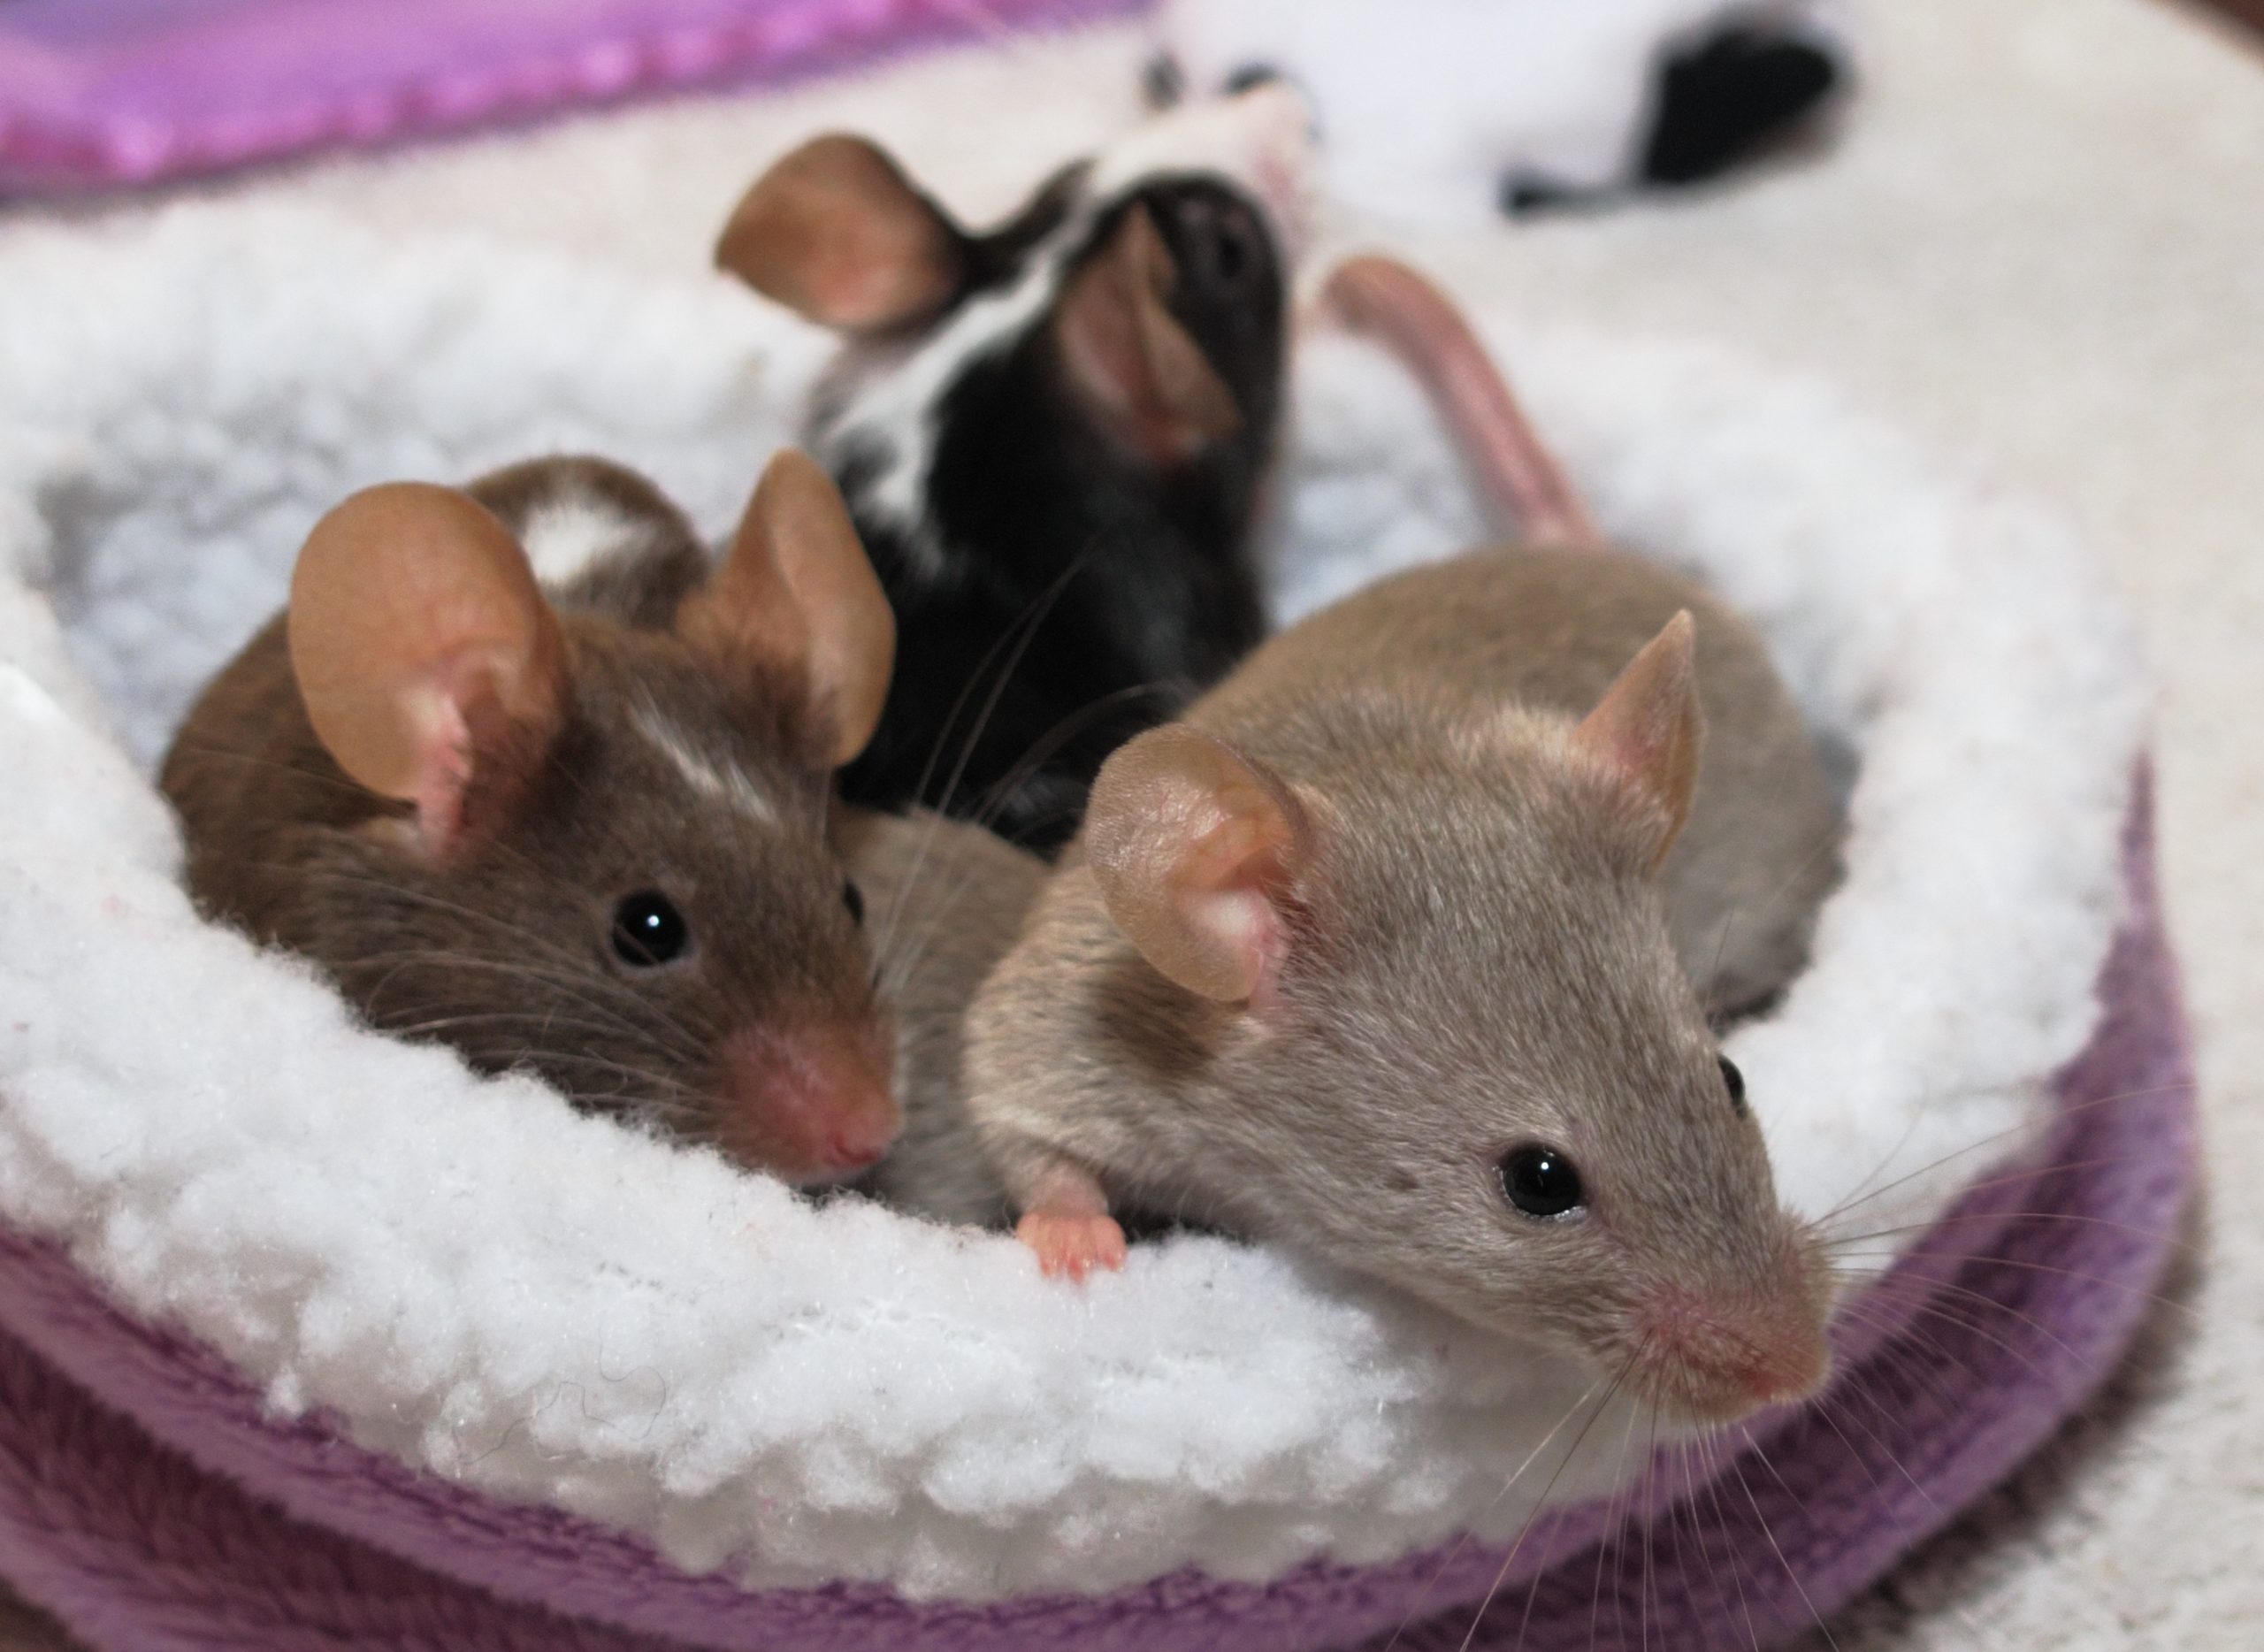 Pet mice cuddling